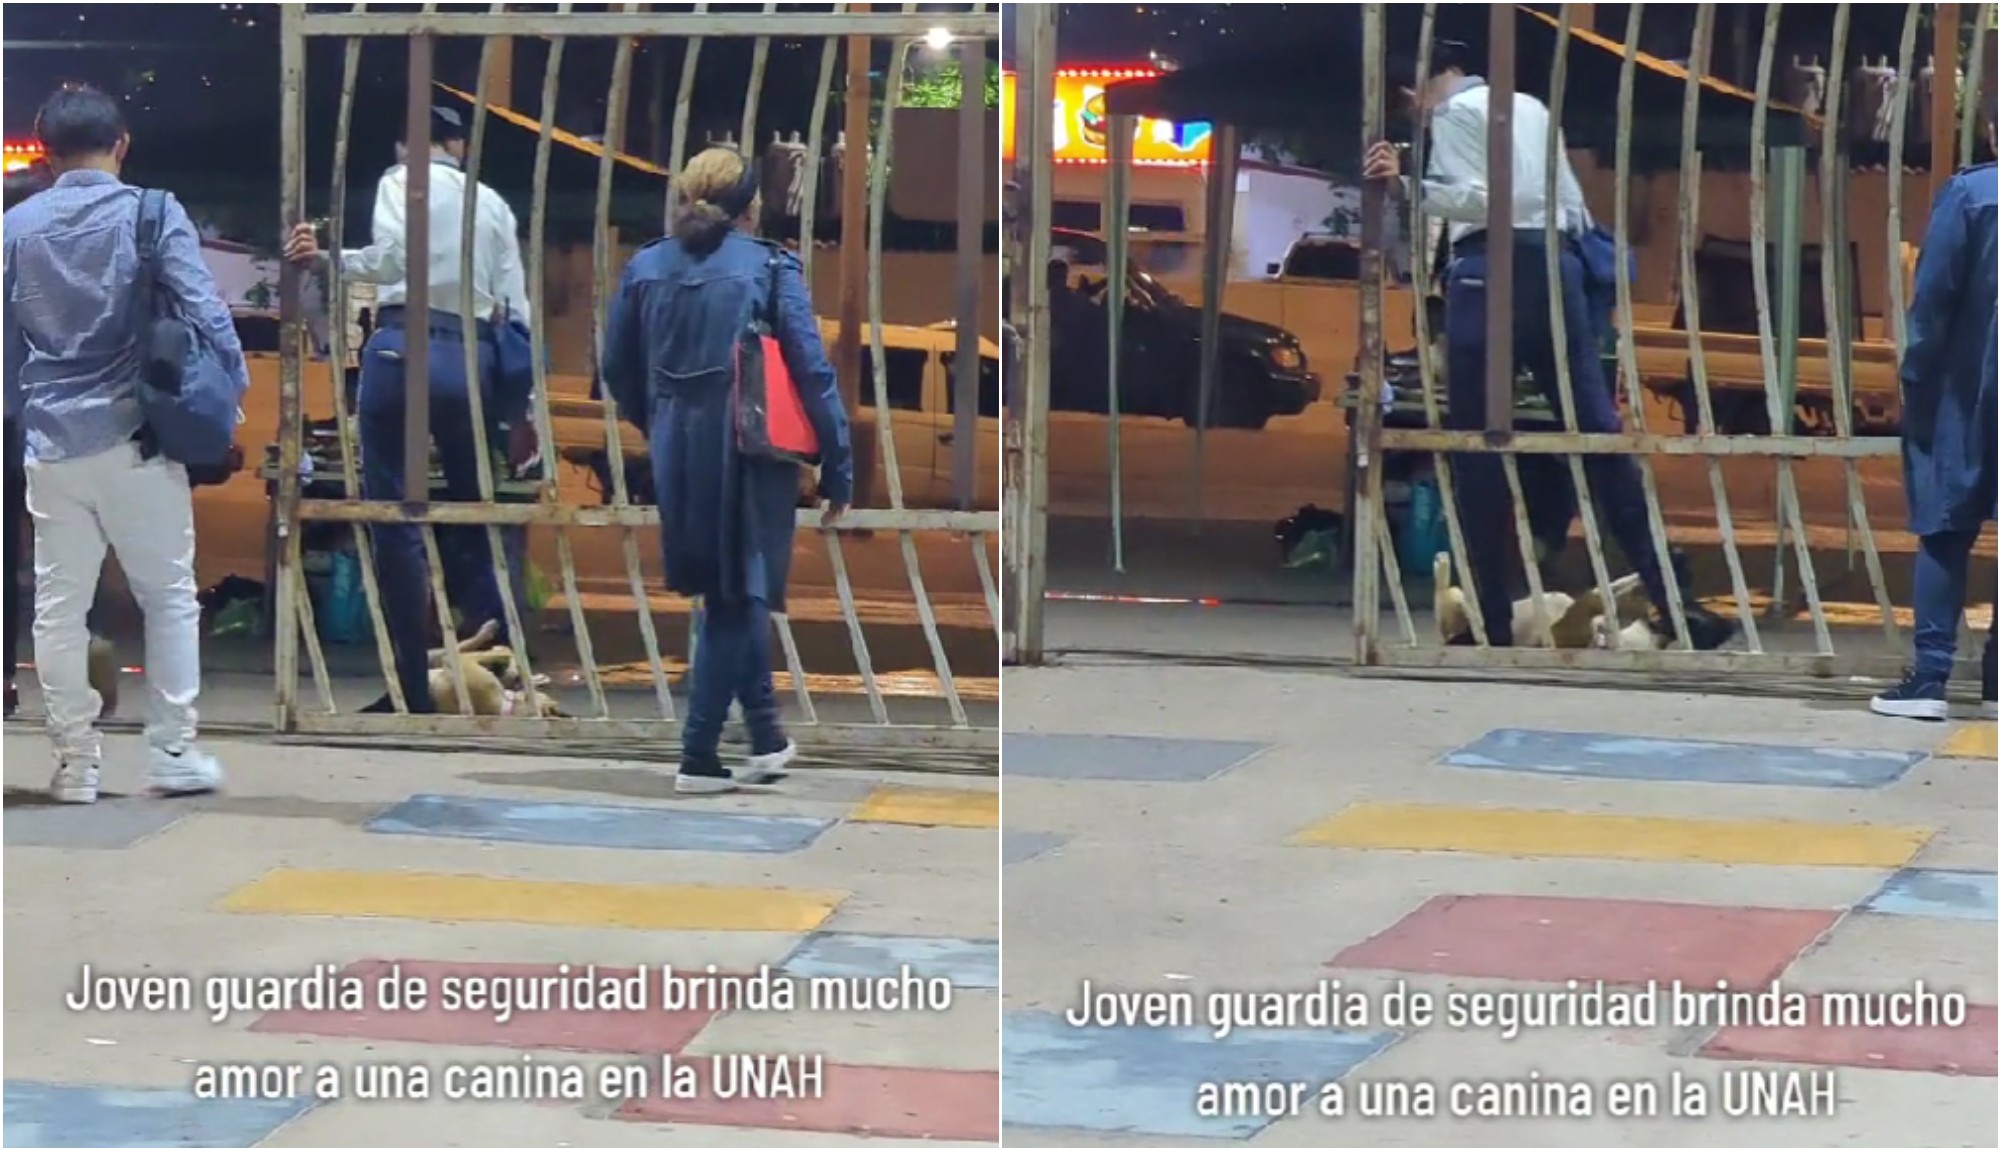 Guardia de la UNAH conmueve en redes sociales por mostrar afecto a perrita de la calle